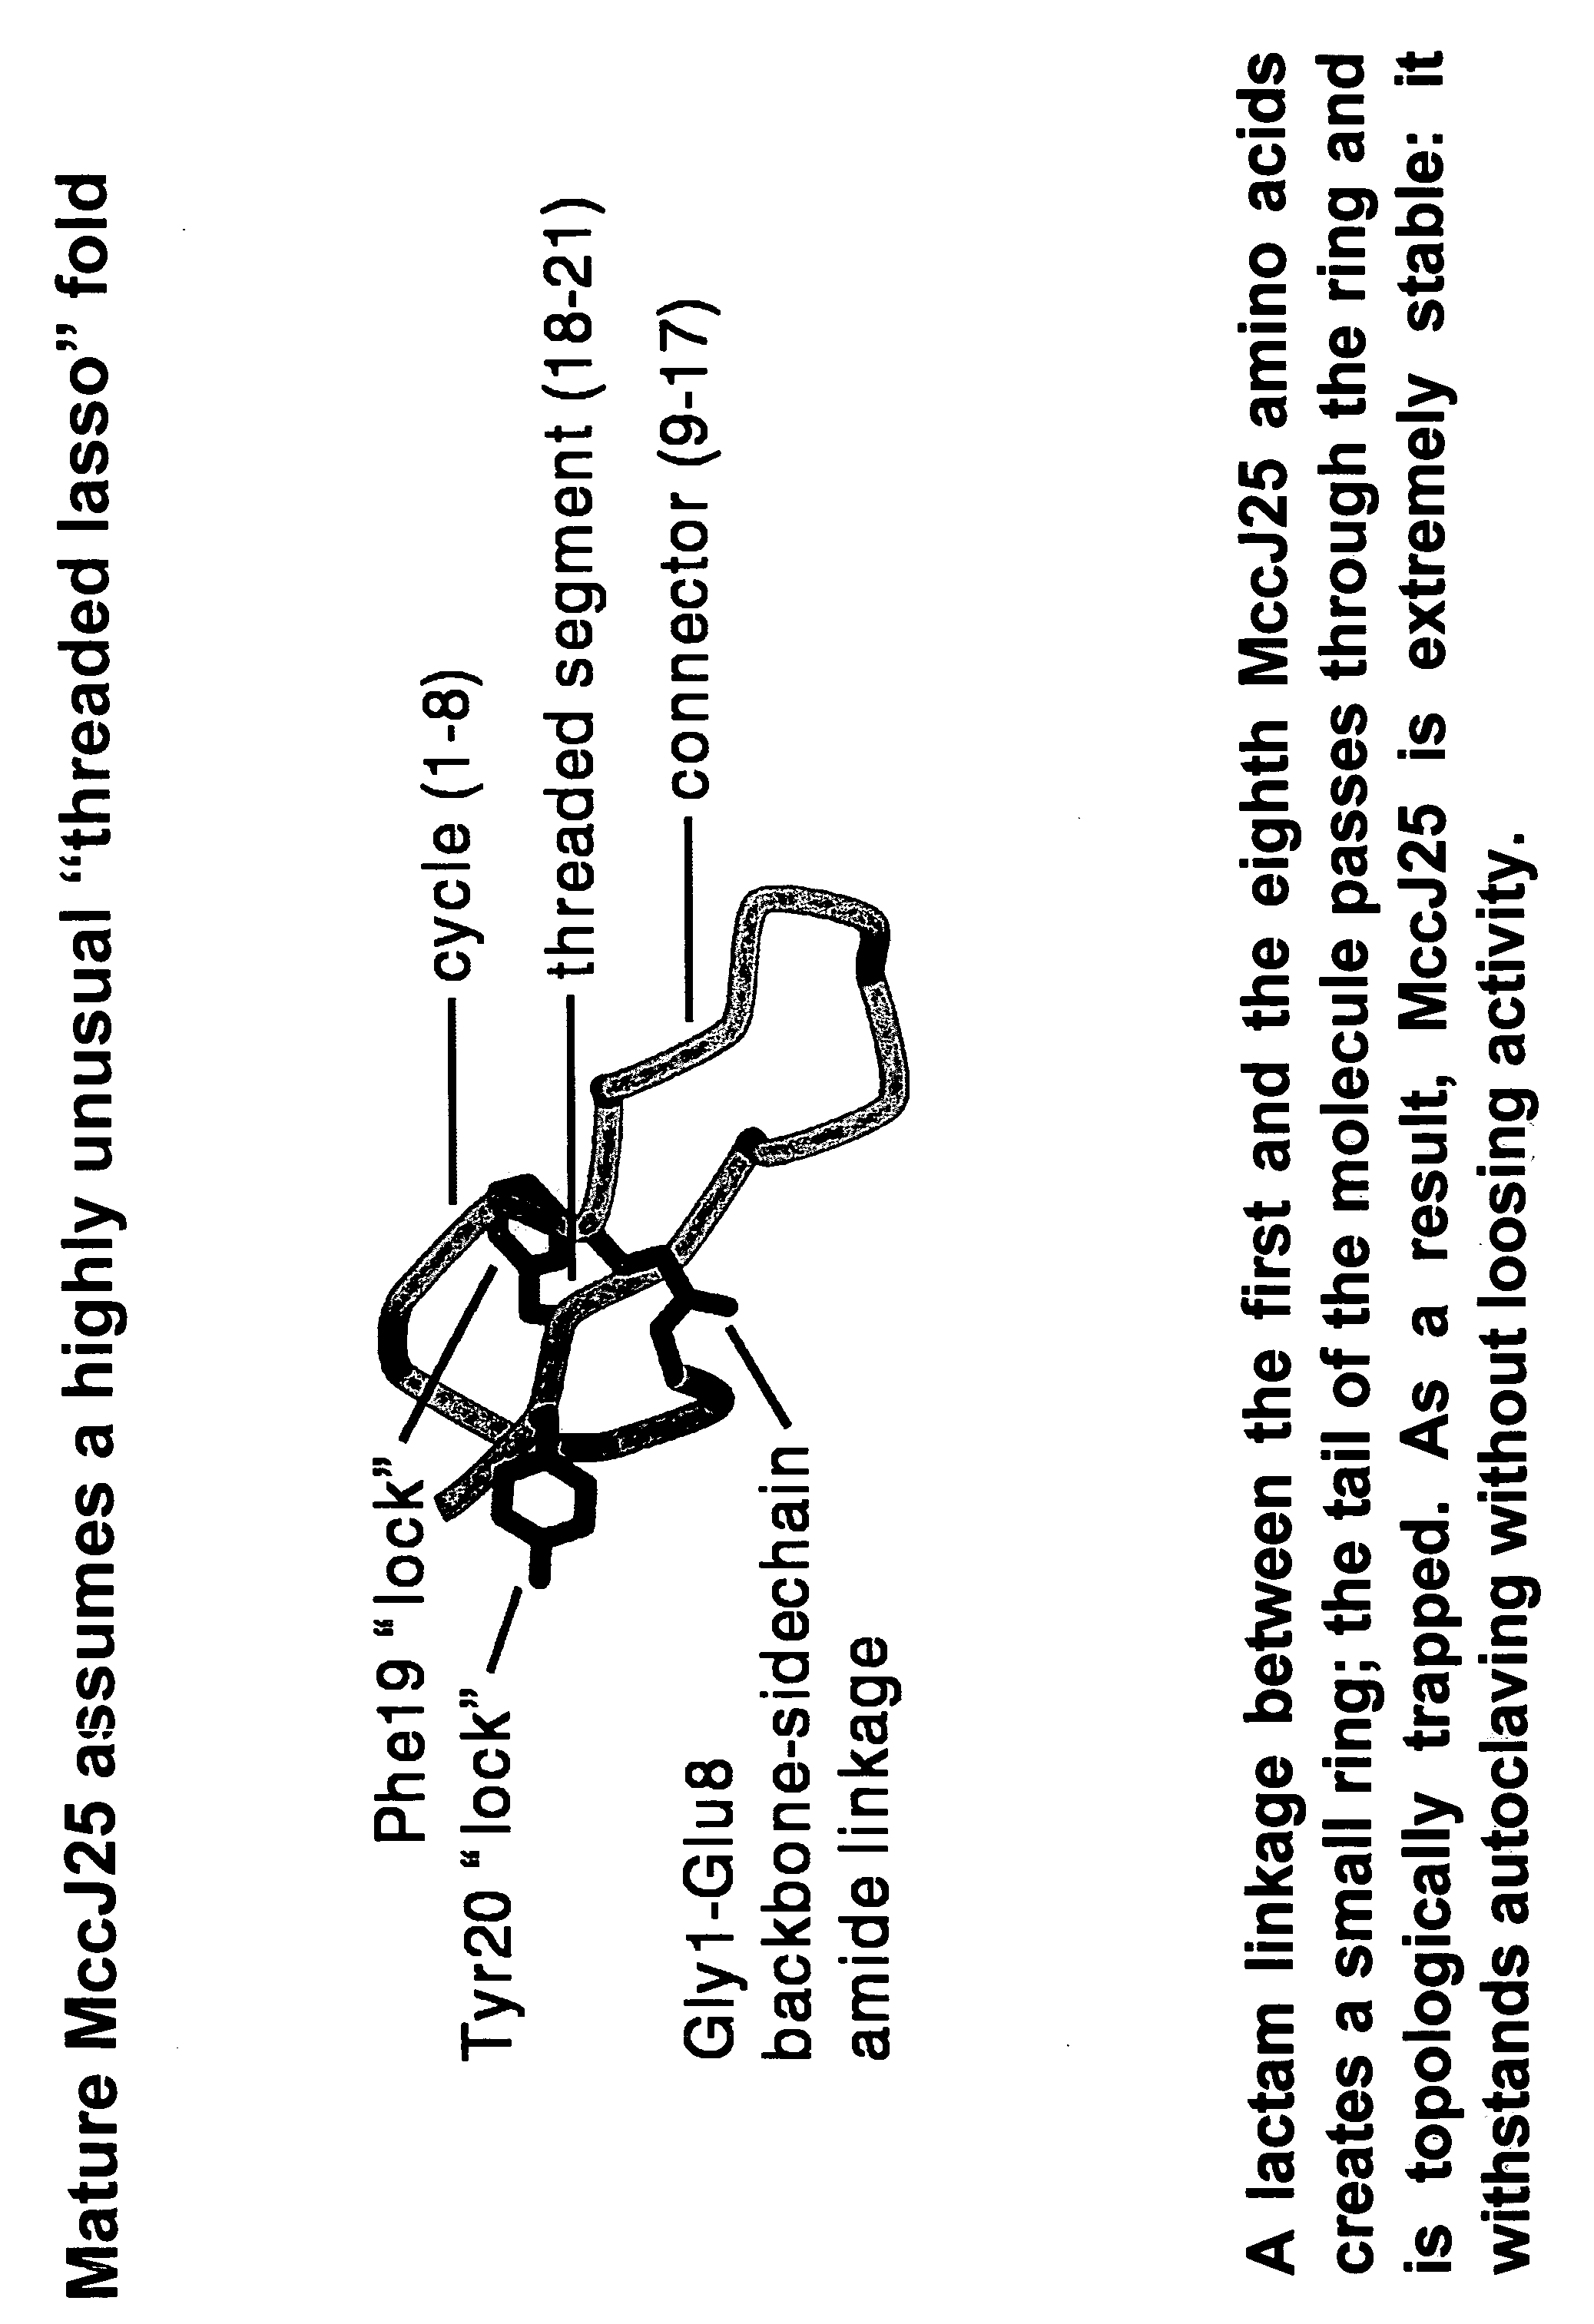 Mutational derivatives of microcin j25